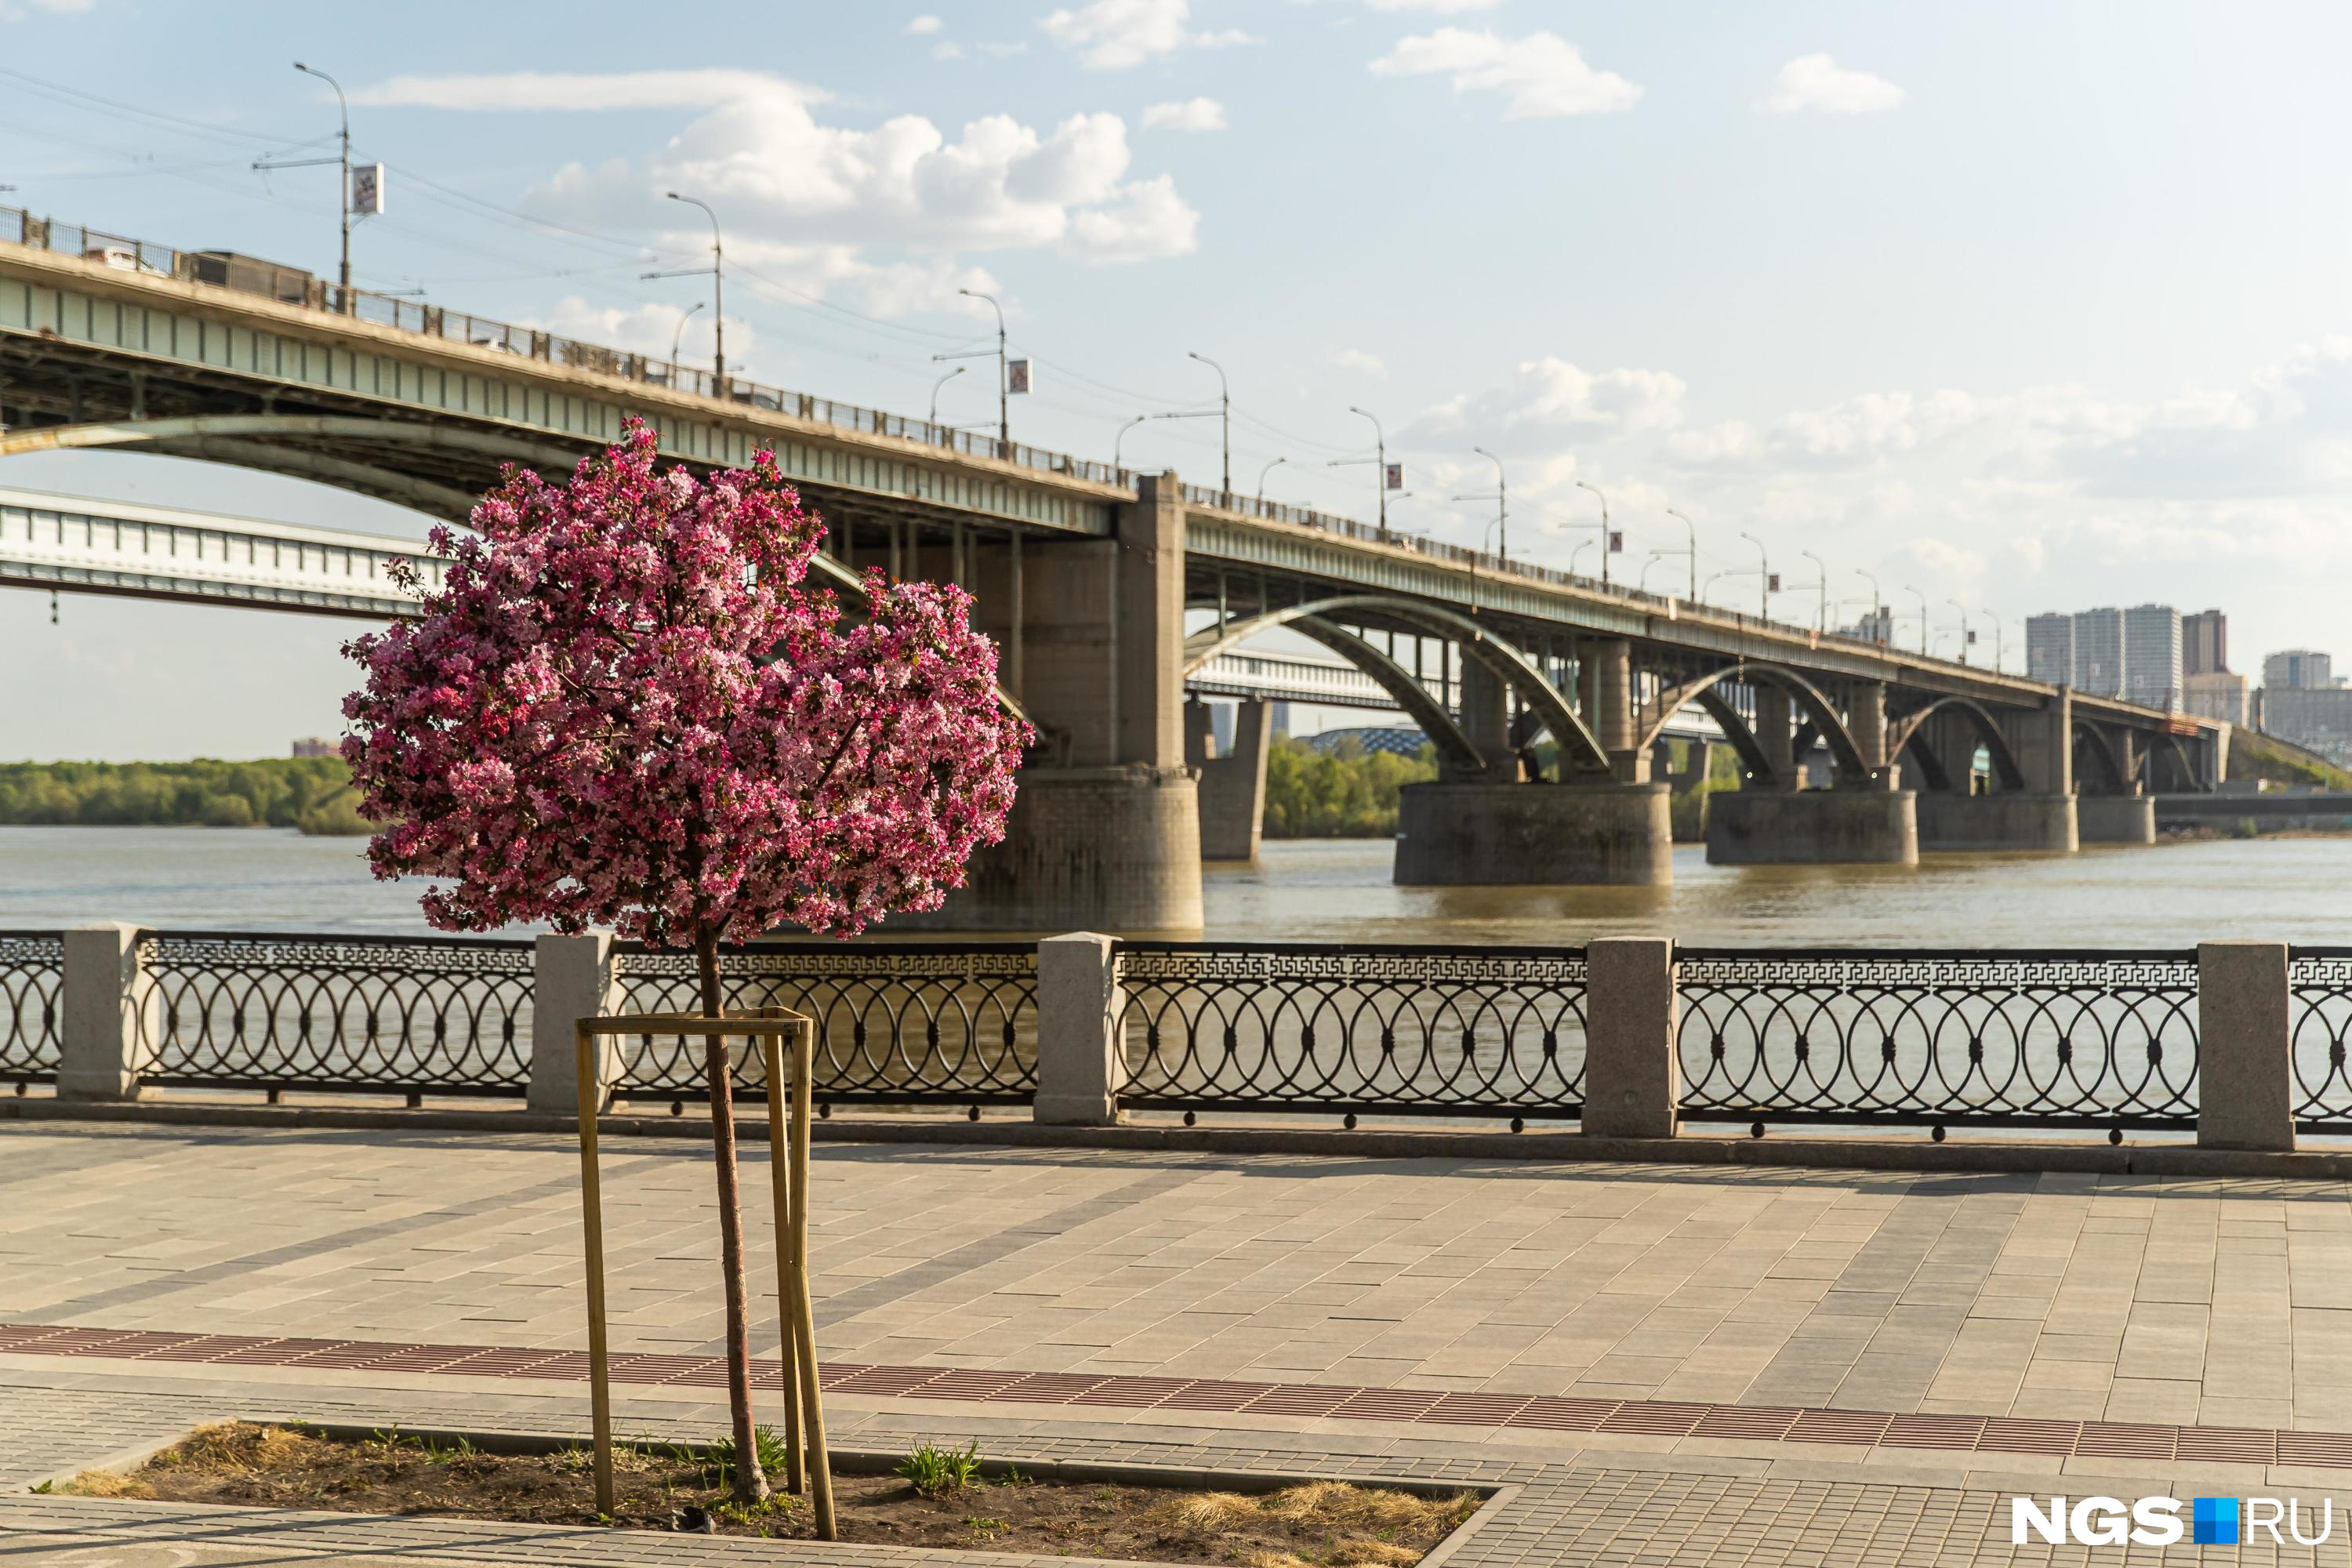 Андрей Травников отмечает, что Новосибирск — гостеприимный город с большим туристическим потенциалом